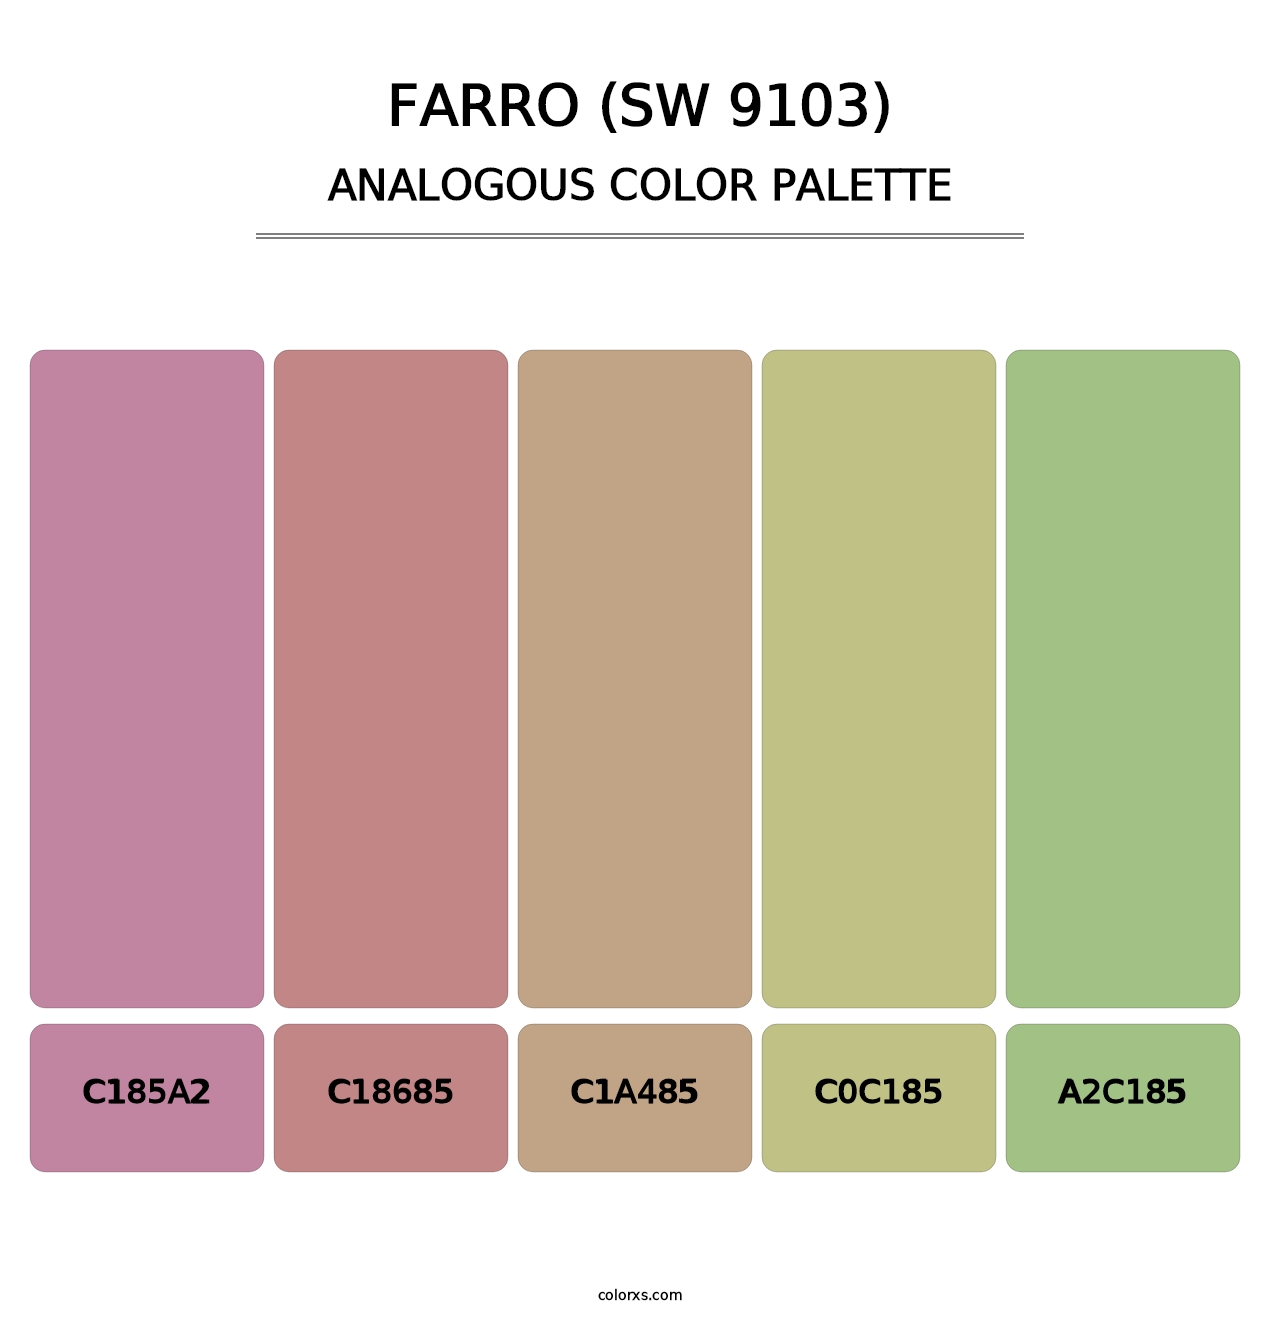 Farro (SW 9103) - Analogous Color Palette